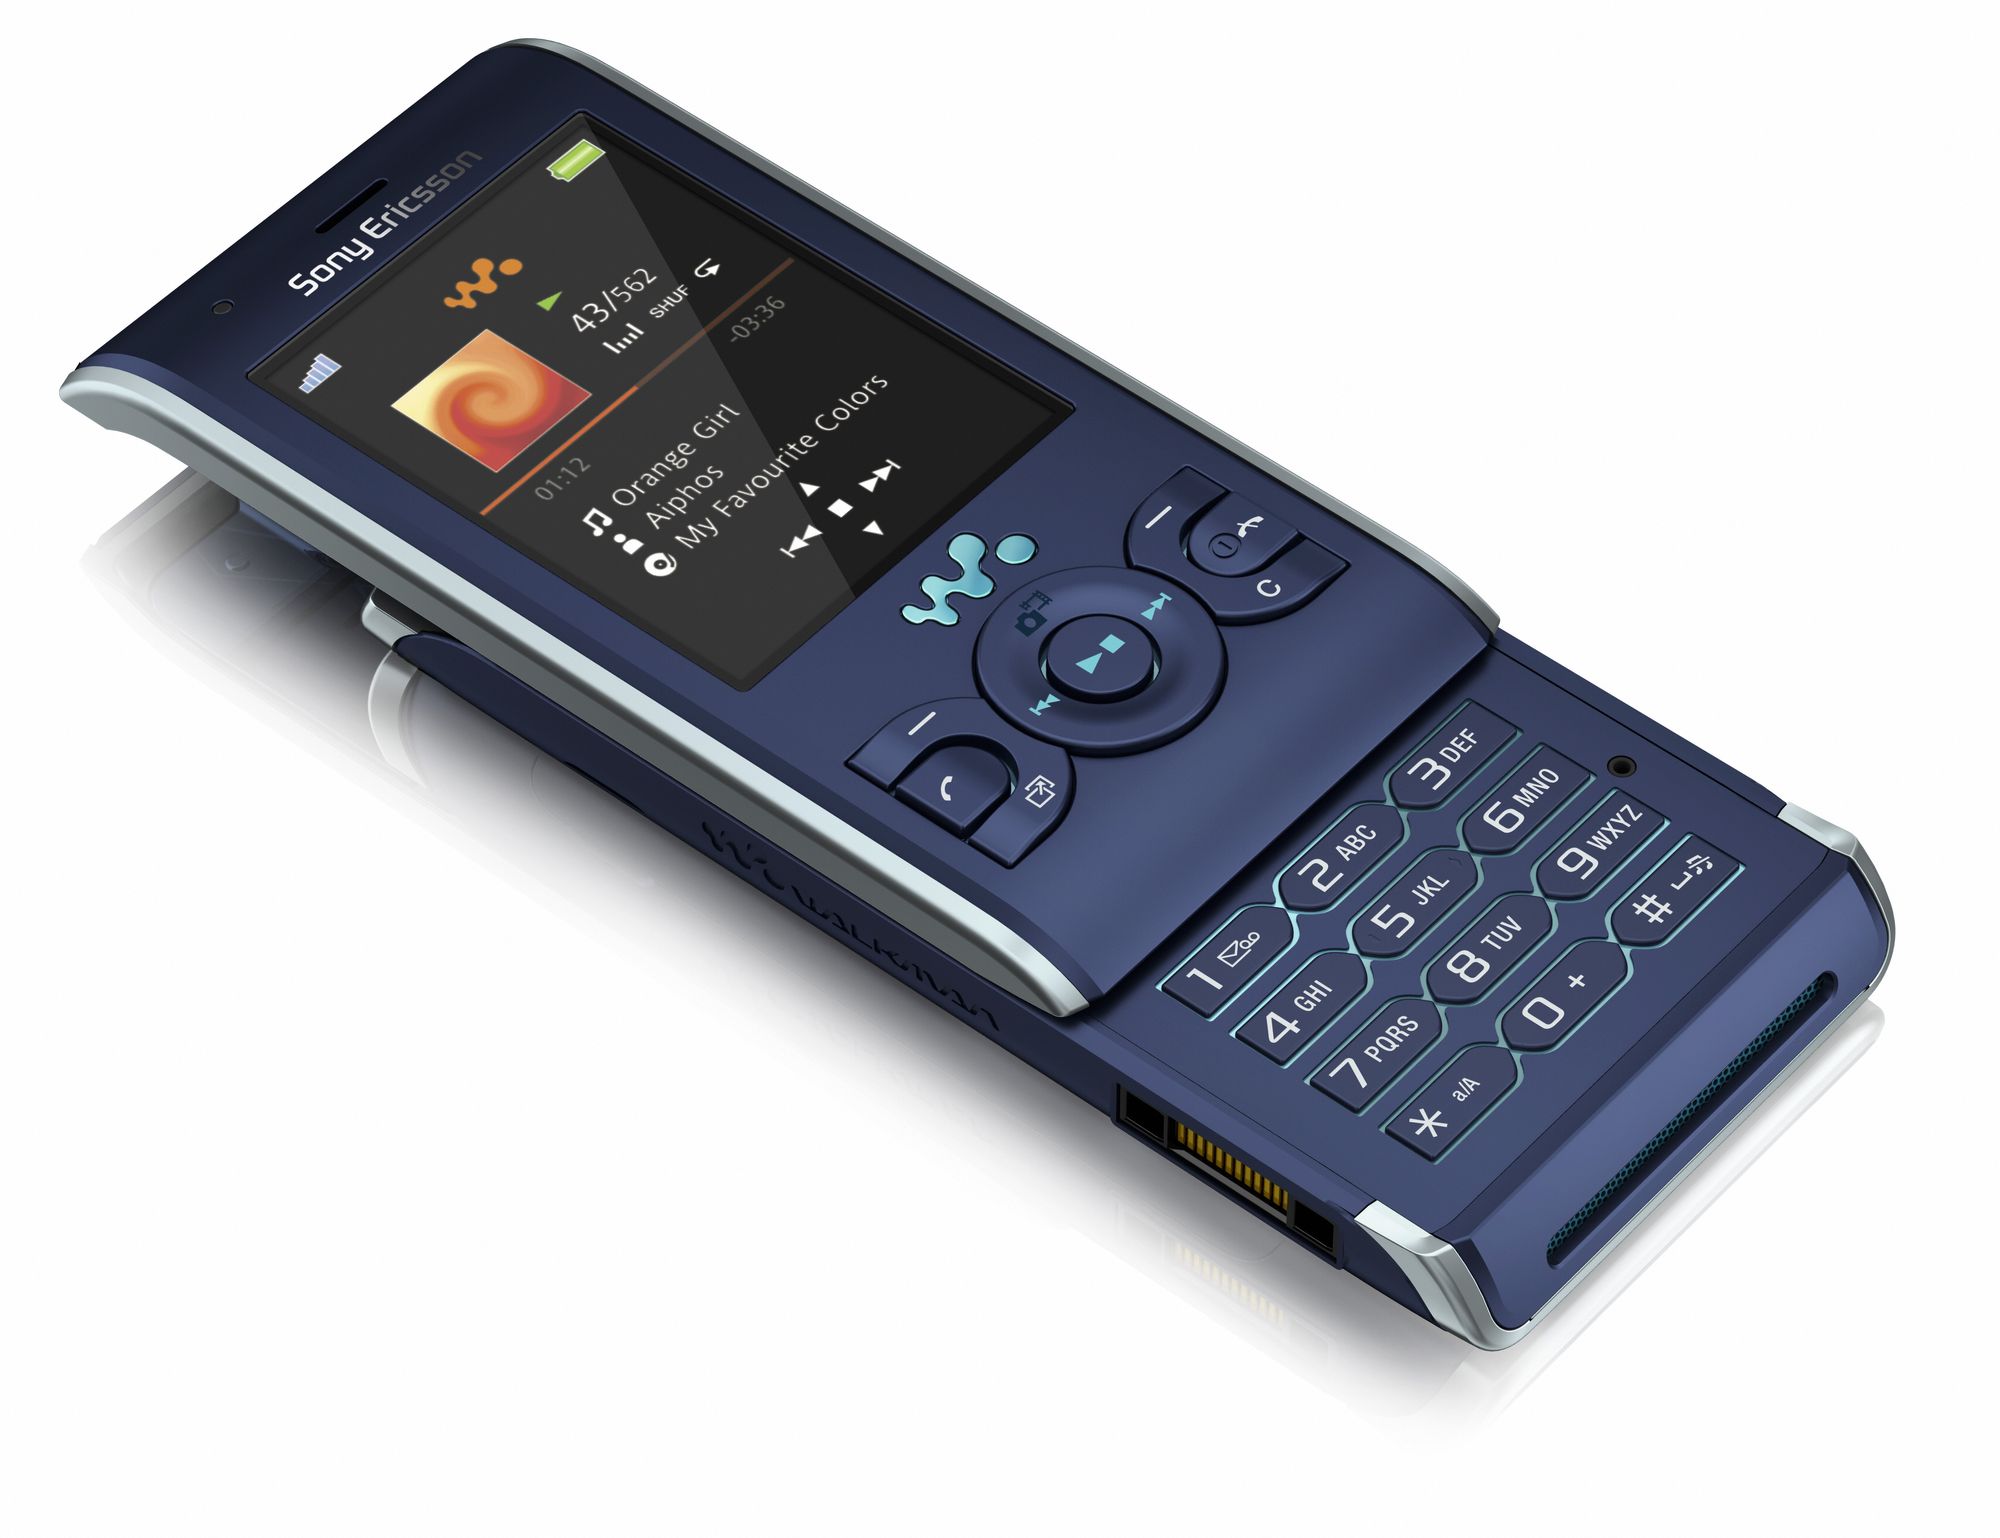 Ericsson слайдер. Sony Ericsson слайдер w595. Sony Ericsson Walkman w595. Sony Ericsson слайдер Walkman w595. Sony Ericsson Walkman 595.